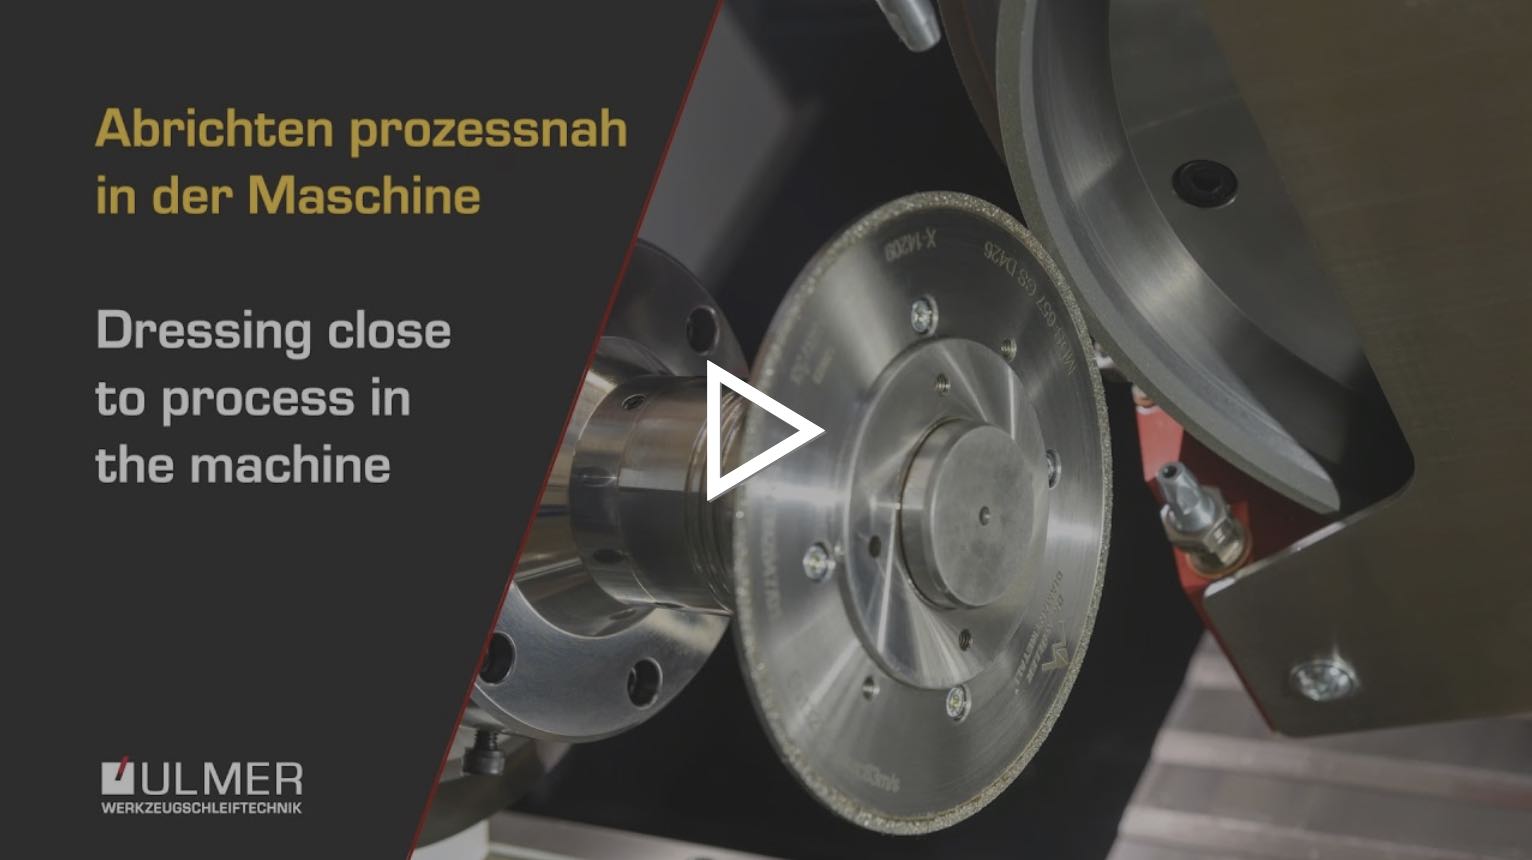 Das Video zeigt das prozessnahe abrichten in der Maschine in einer Nahaufnahme